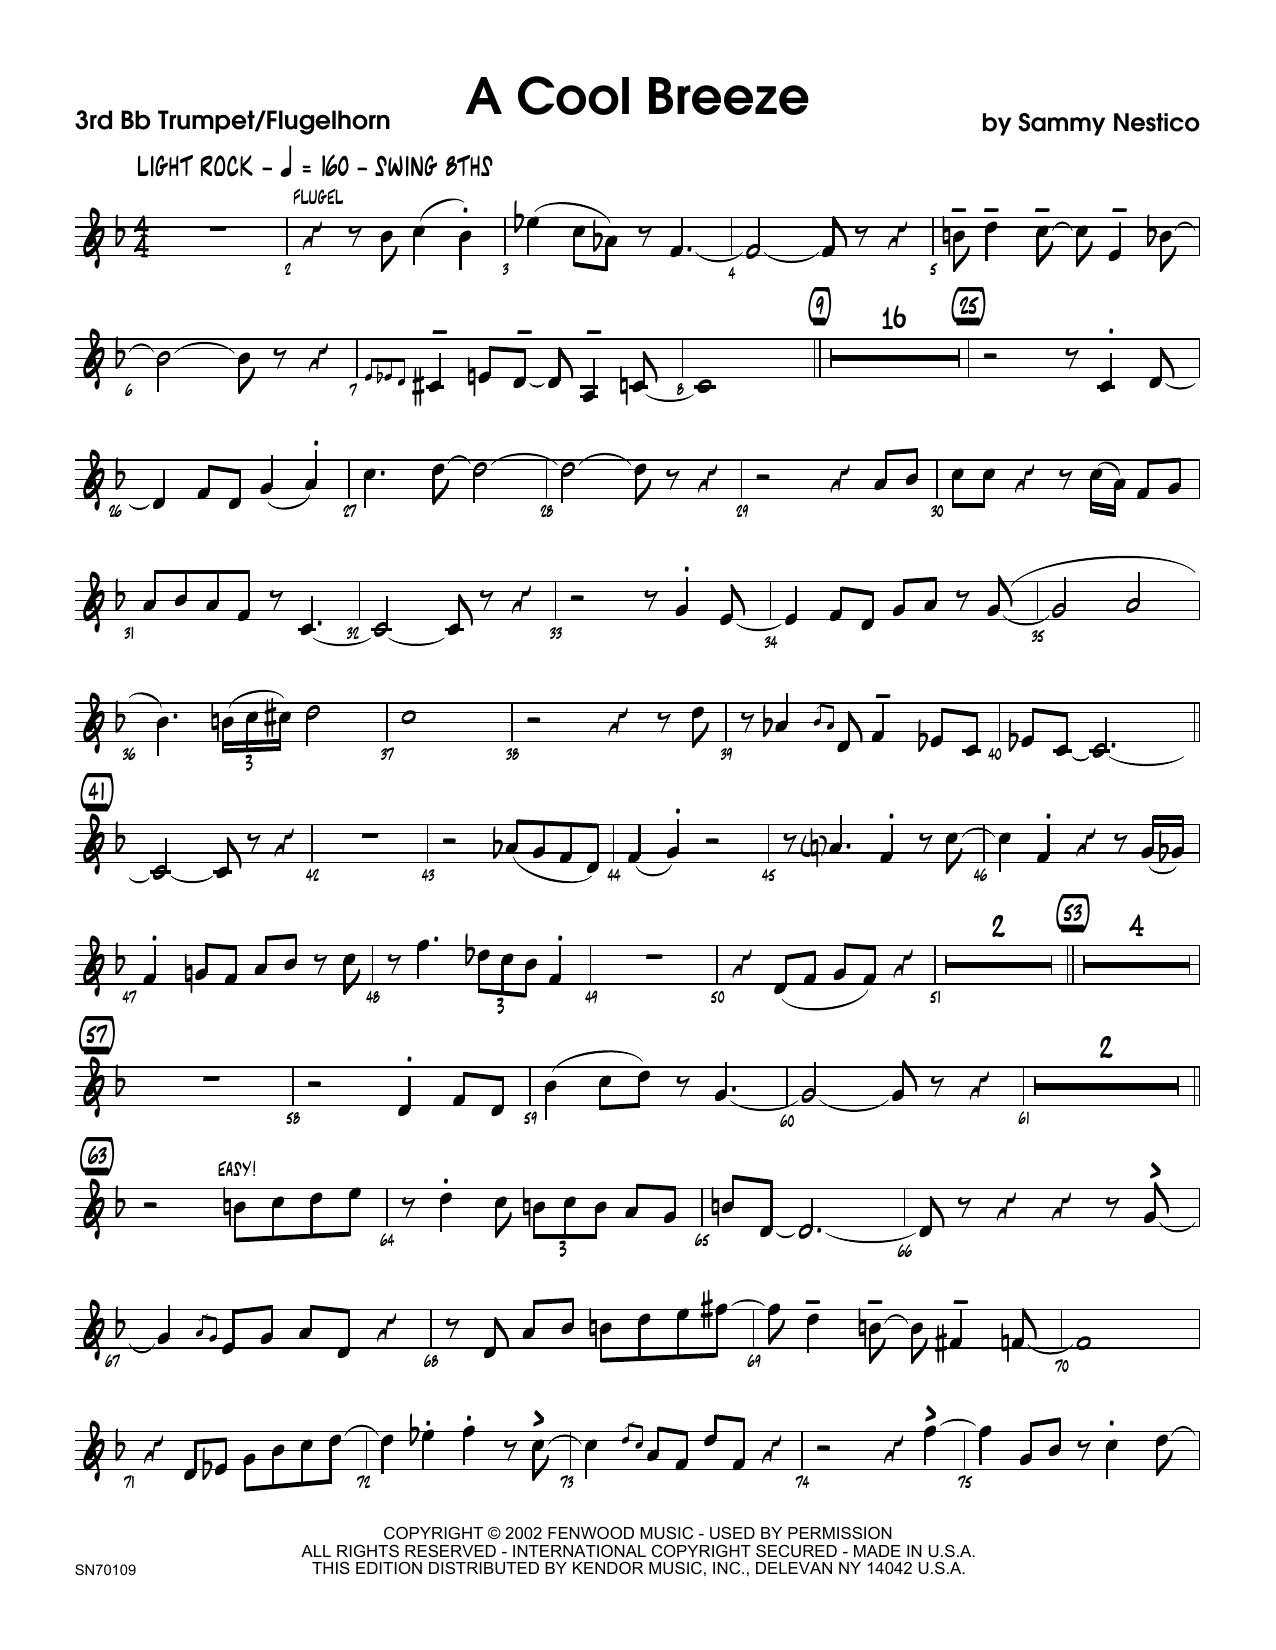 Download Sammy Nestico A Cool Breeze - 3rd Bb Trumpet Sheet Music